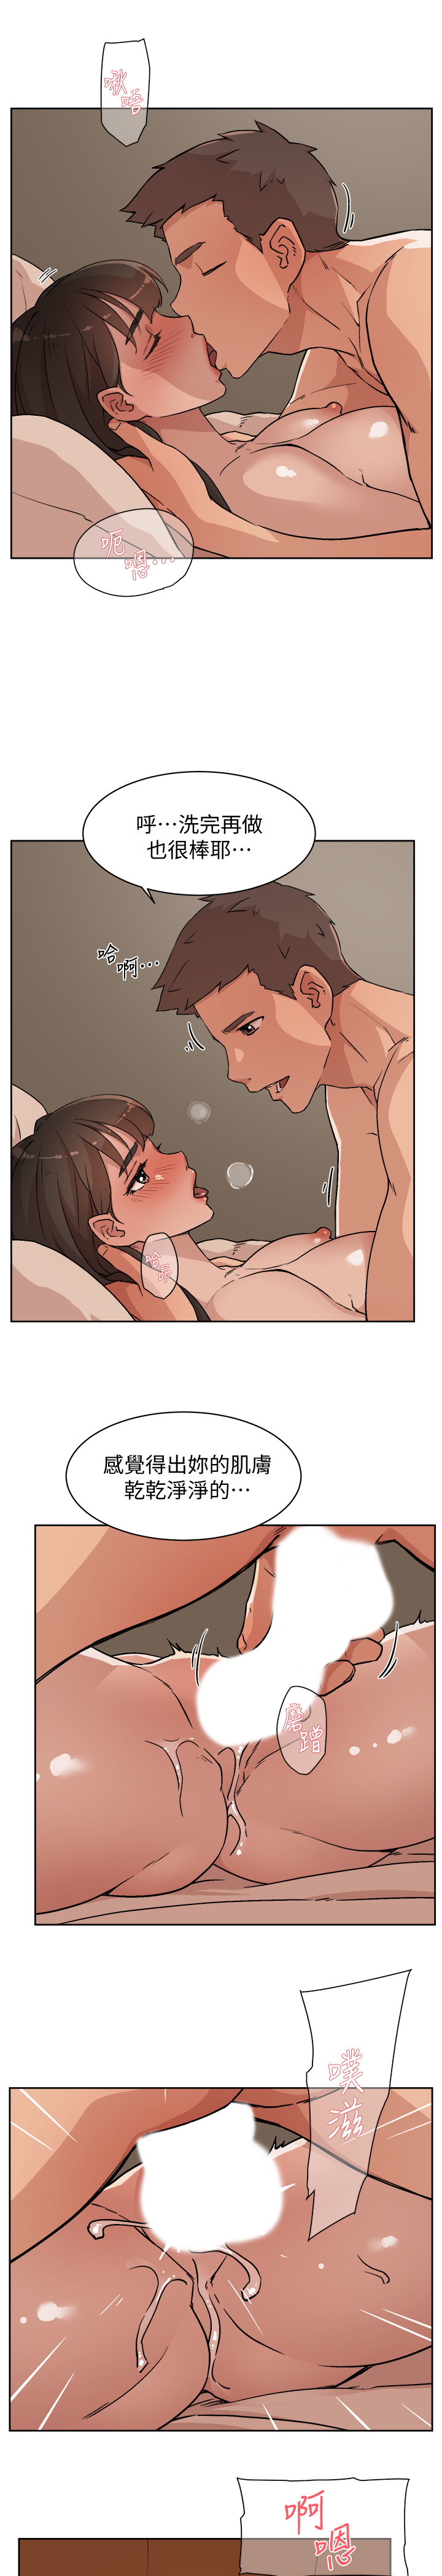 韩国污漫画 好友的私生活 第6话 3